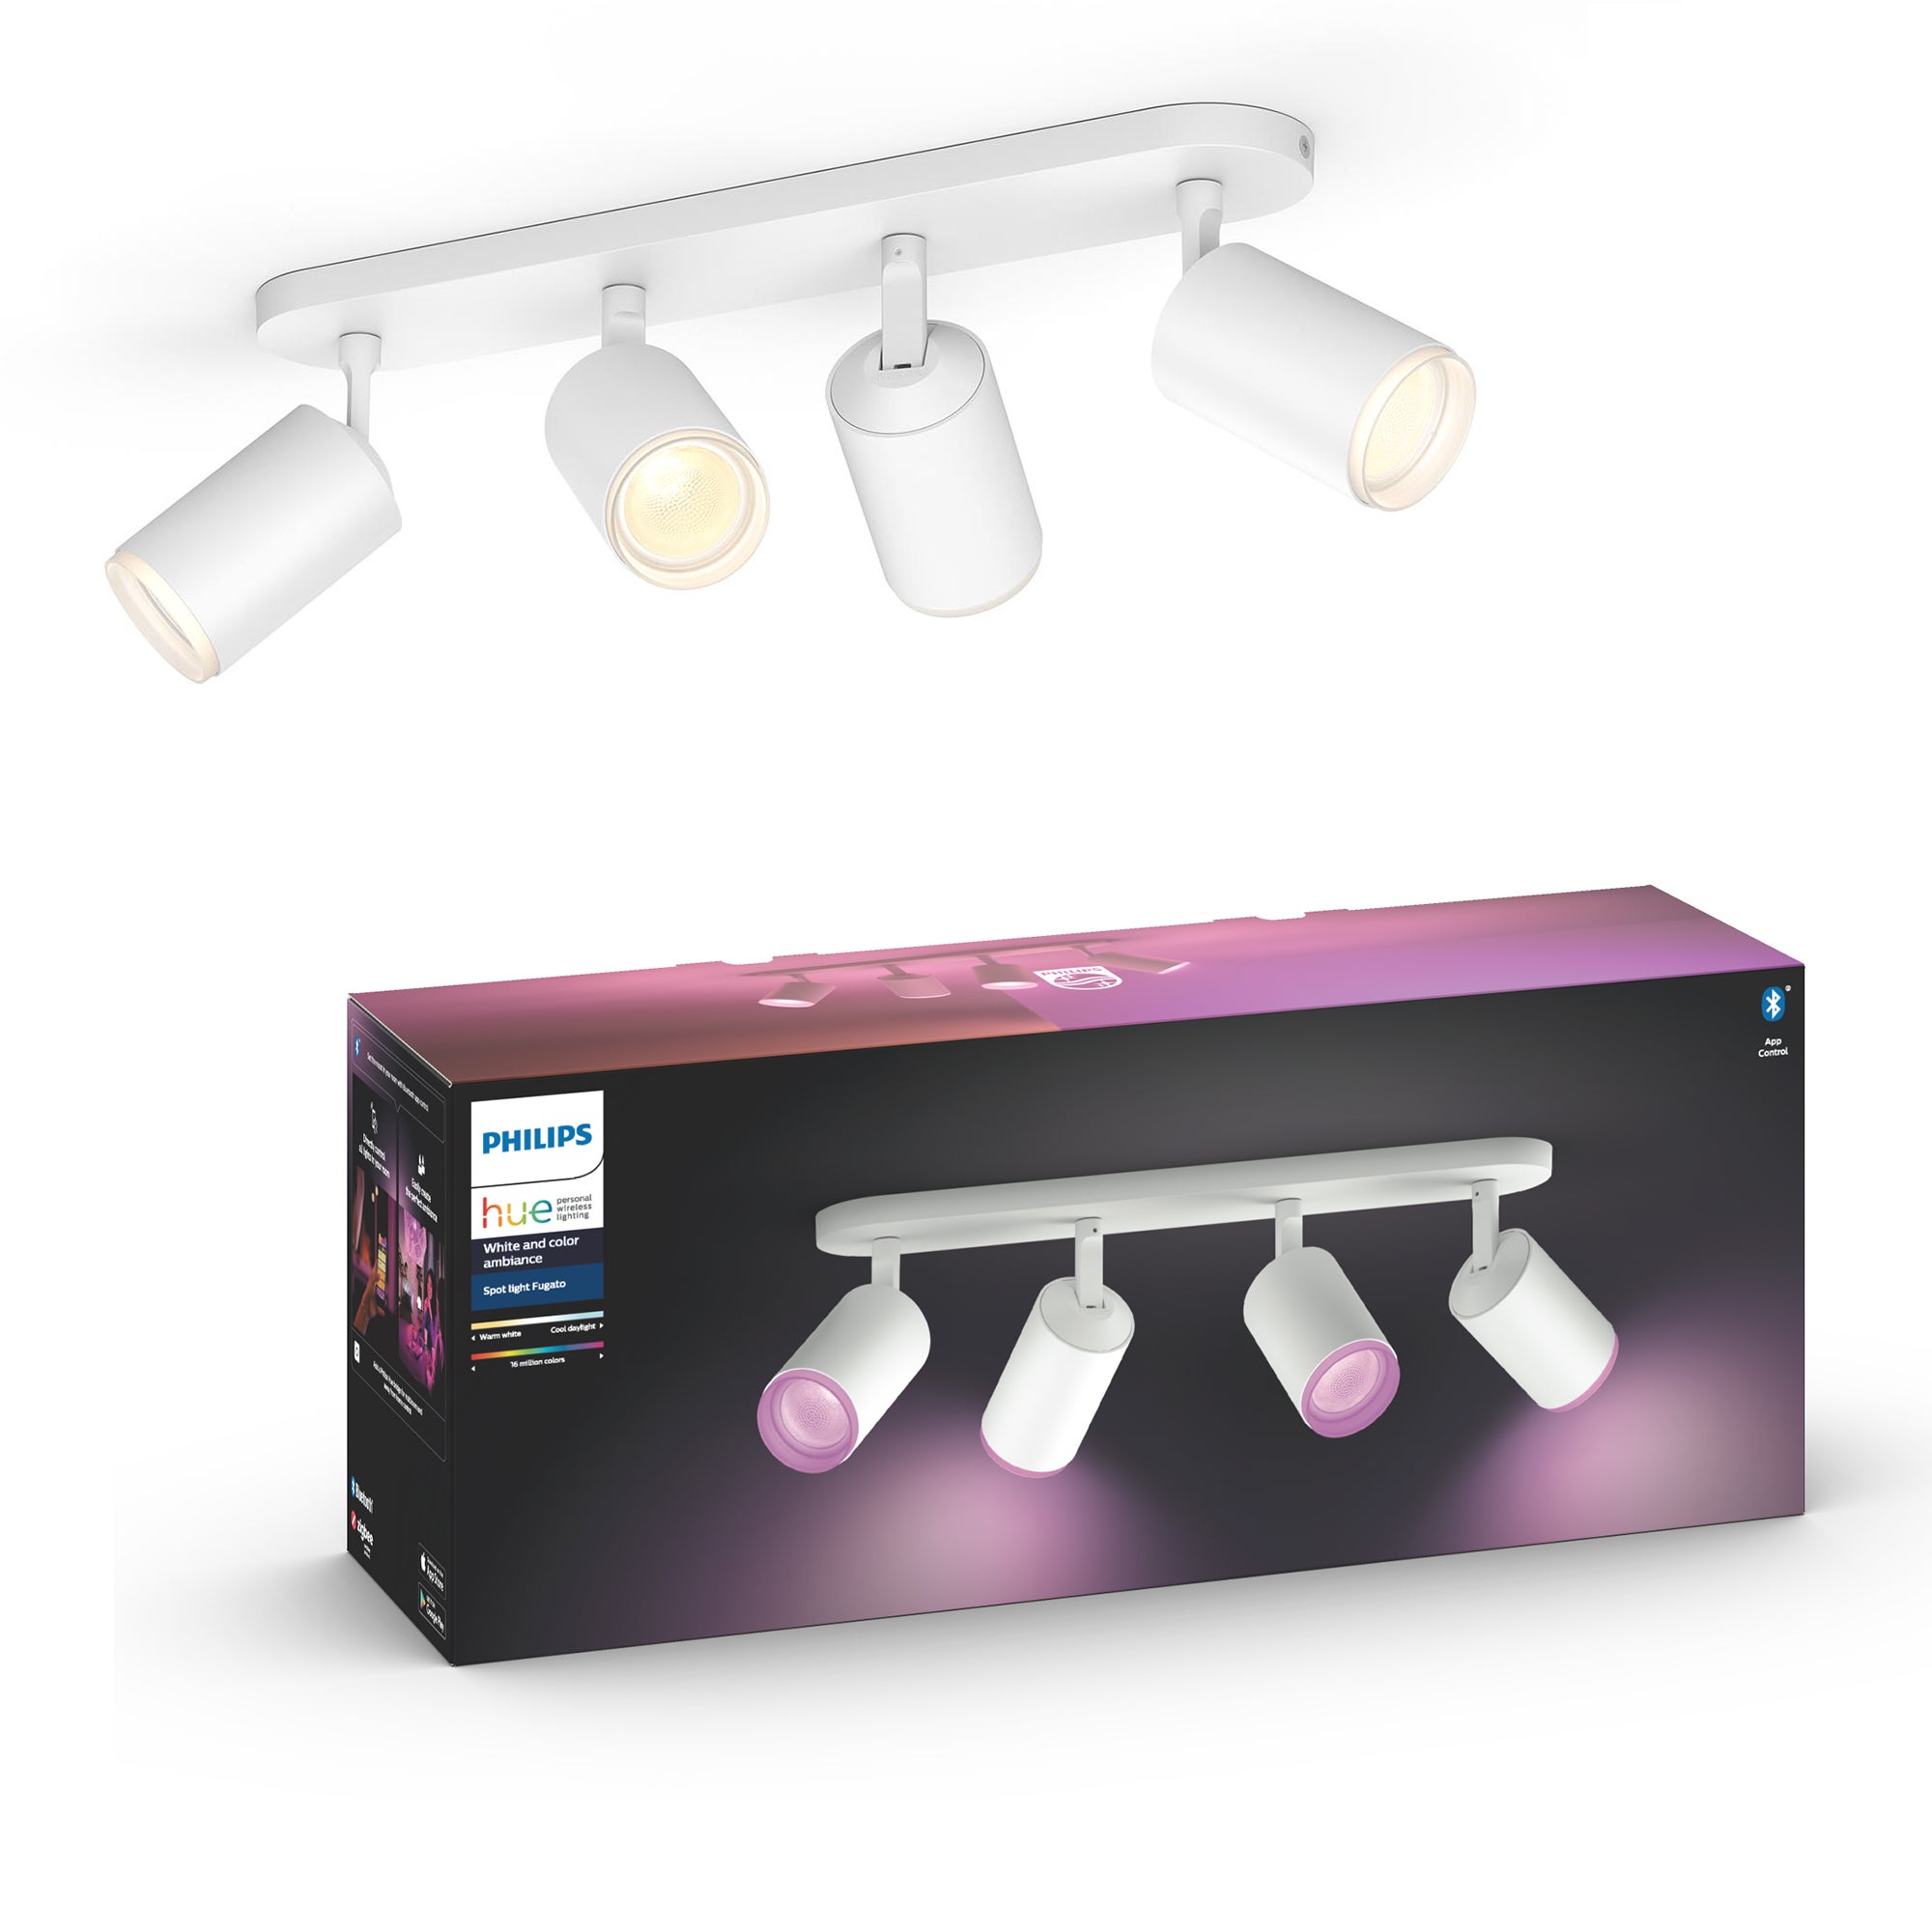 Philips HUE Fugato 4 Light Smart LED Ceiling Spotlight Bar White